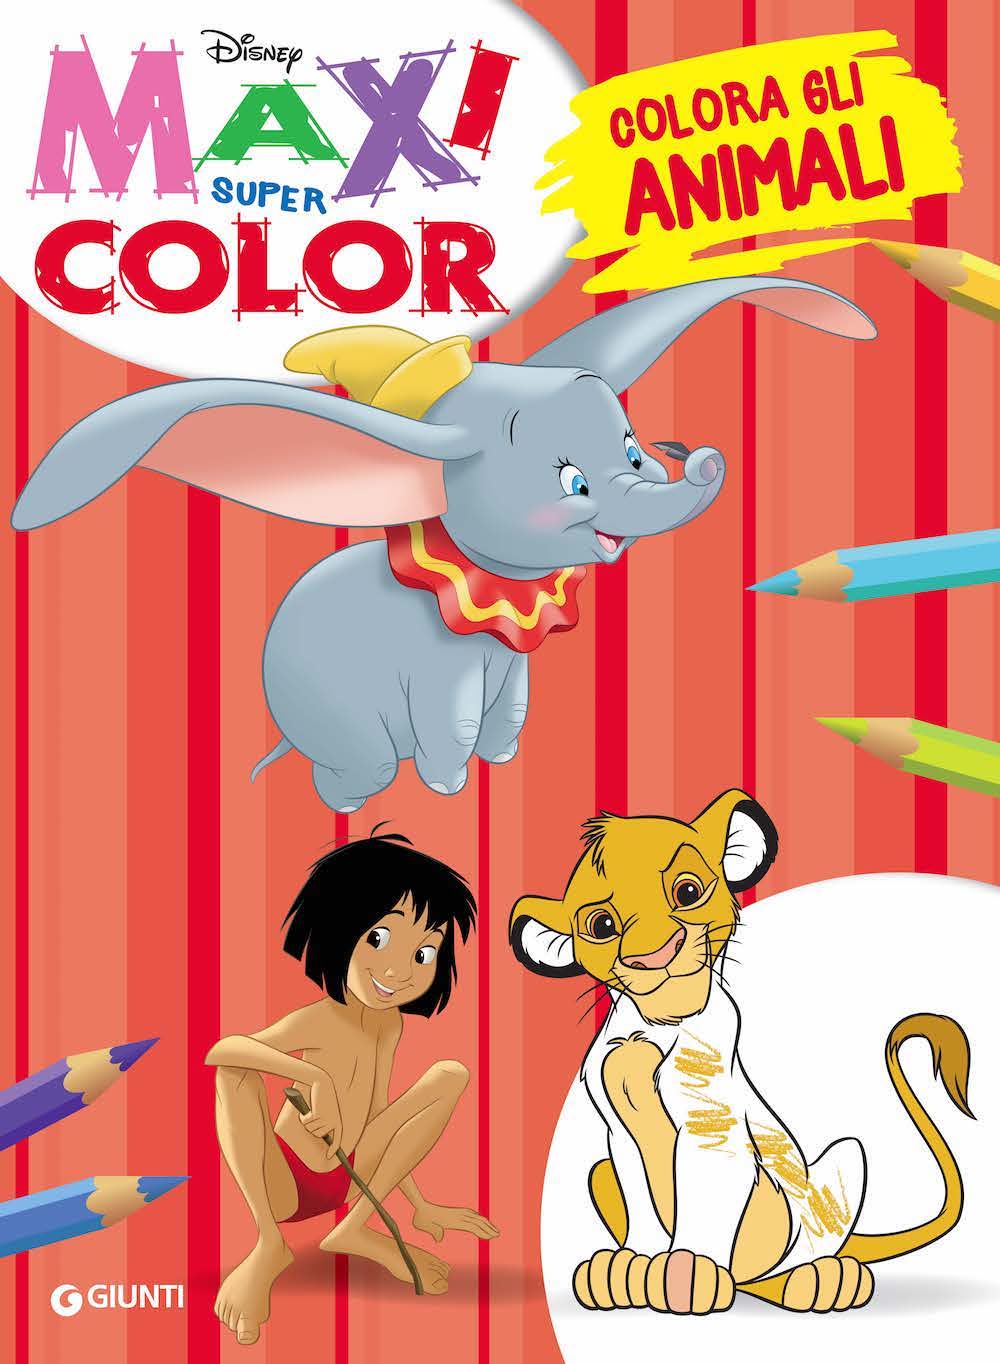 Maxi Supercolor - Colora gli animali. Dumbo, Il re leone, Il libro della giungla